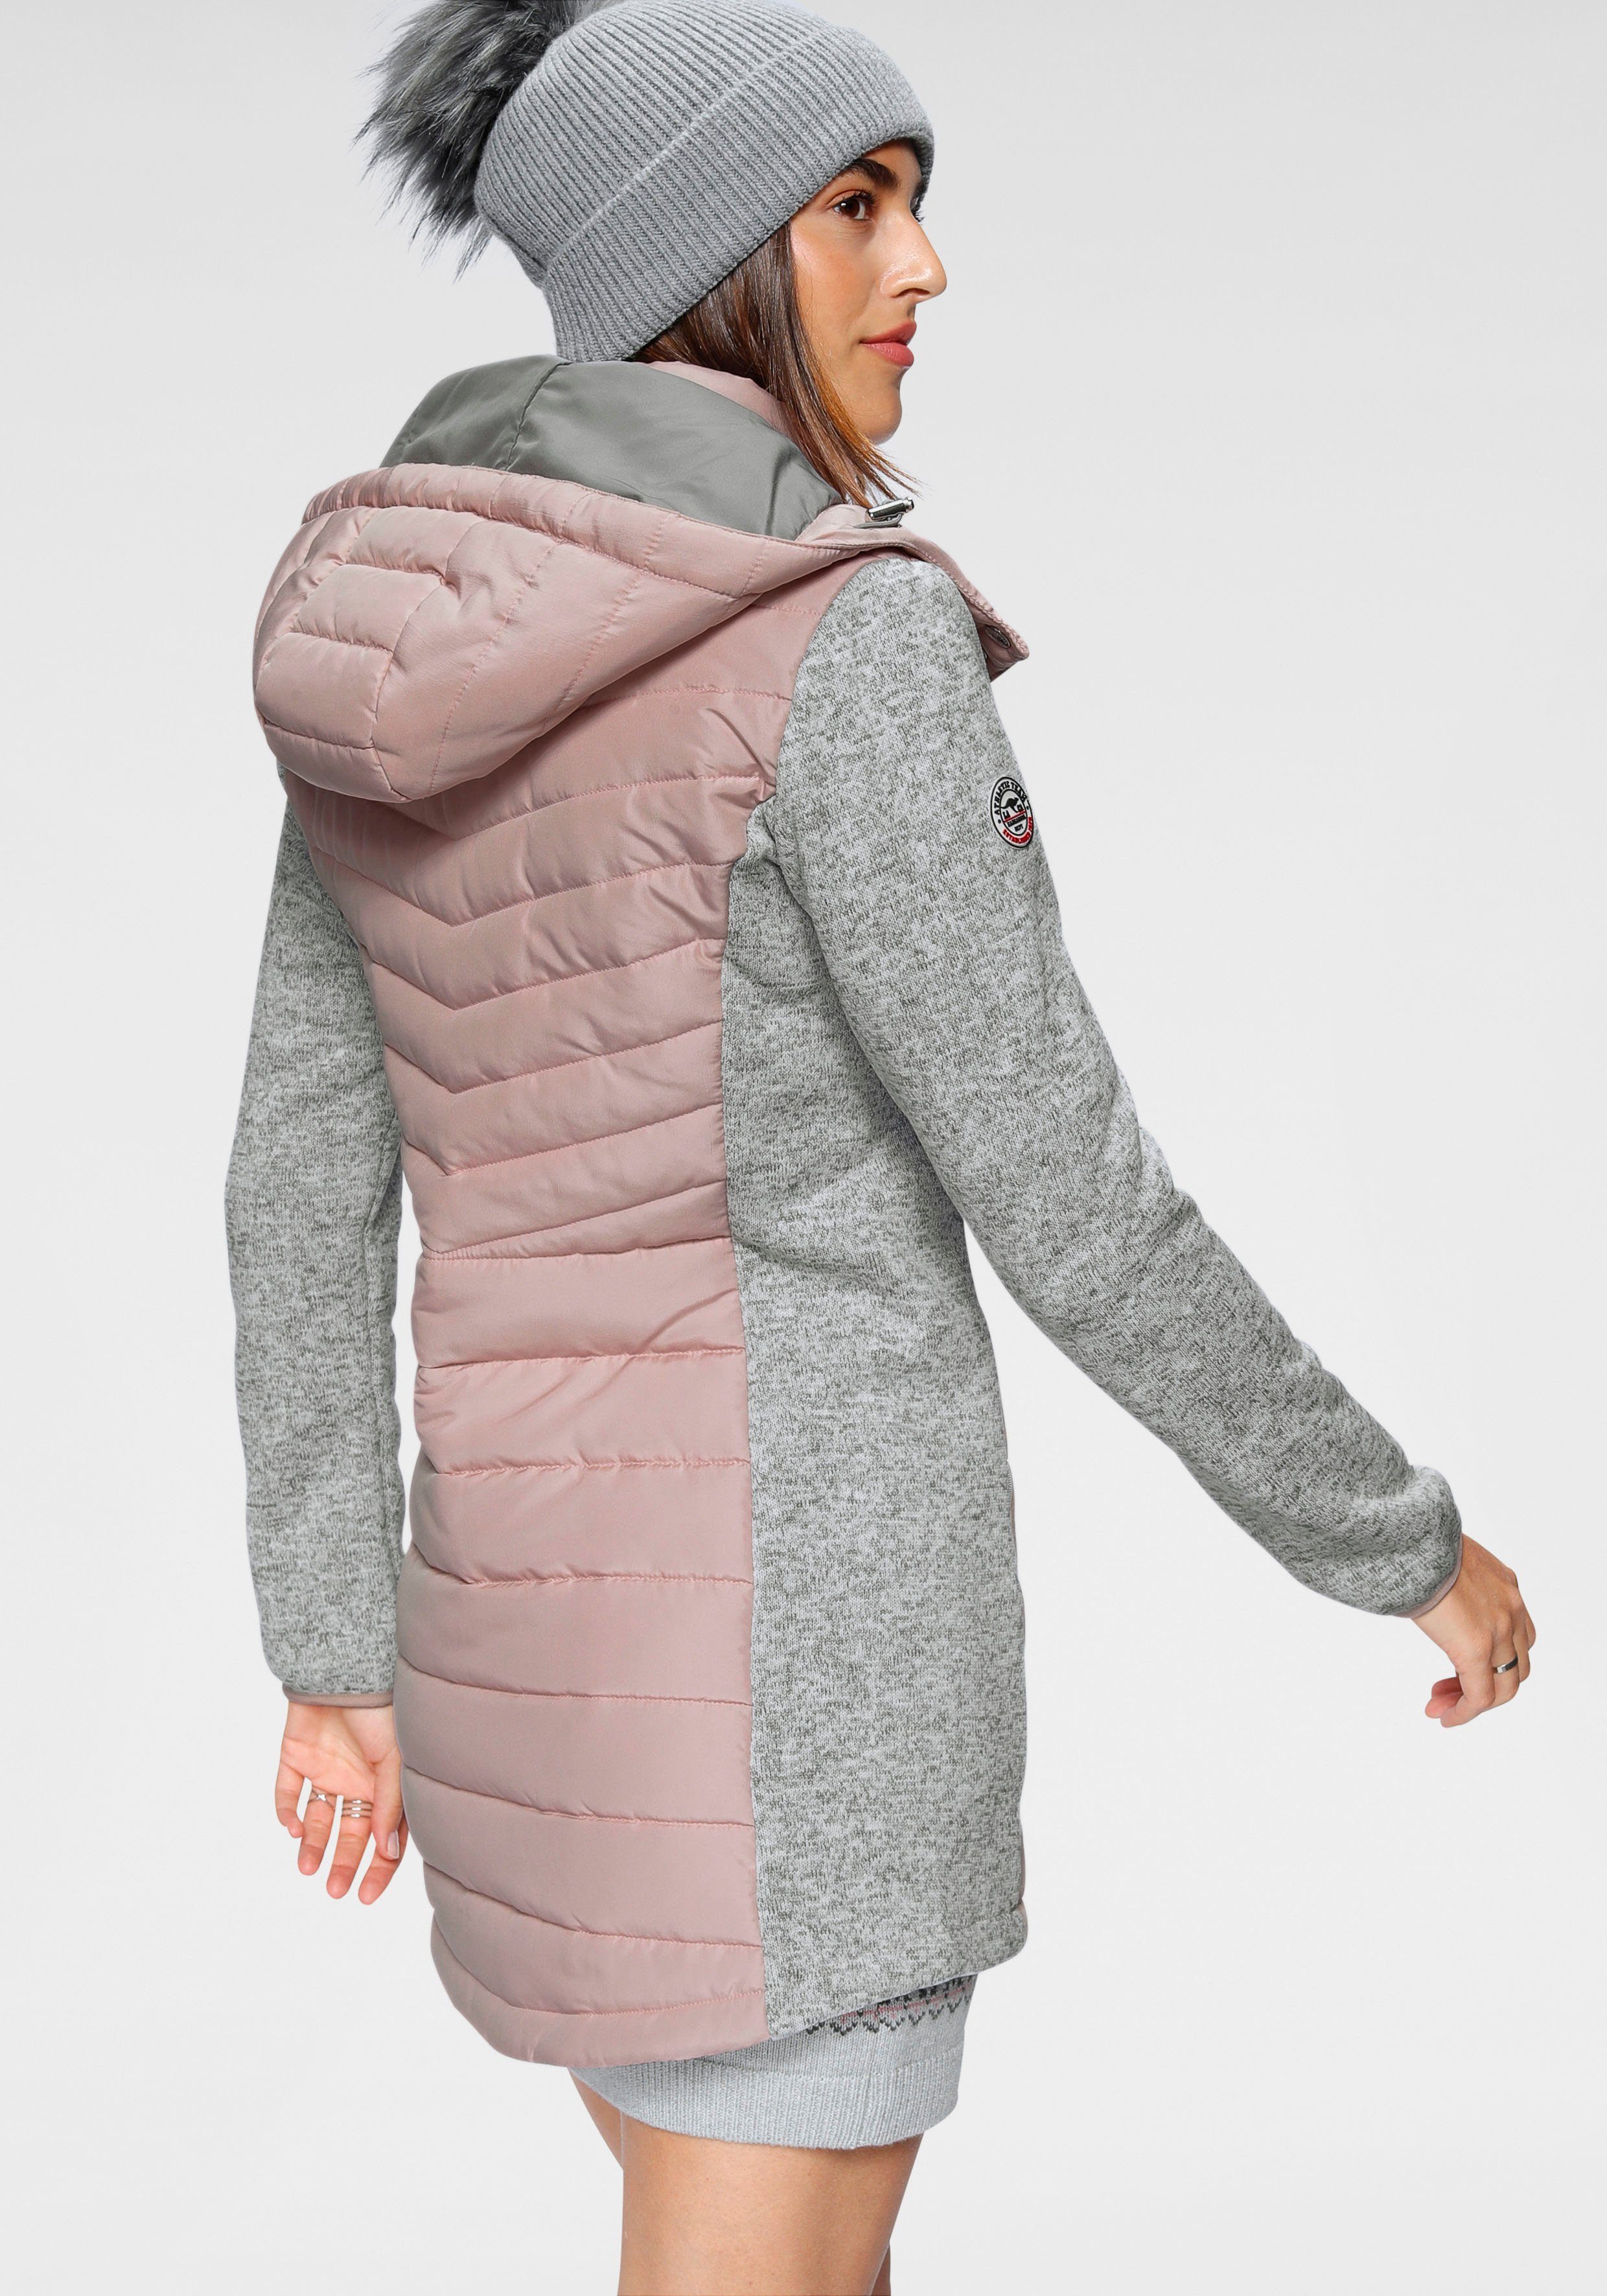 Material) Langjacke aus trendigen Look (Jacke nachhaltigem KangaROOS im grau-rosa 2-In-1